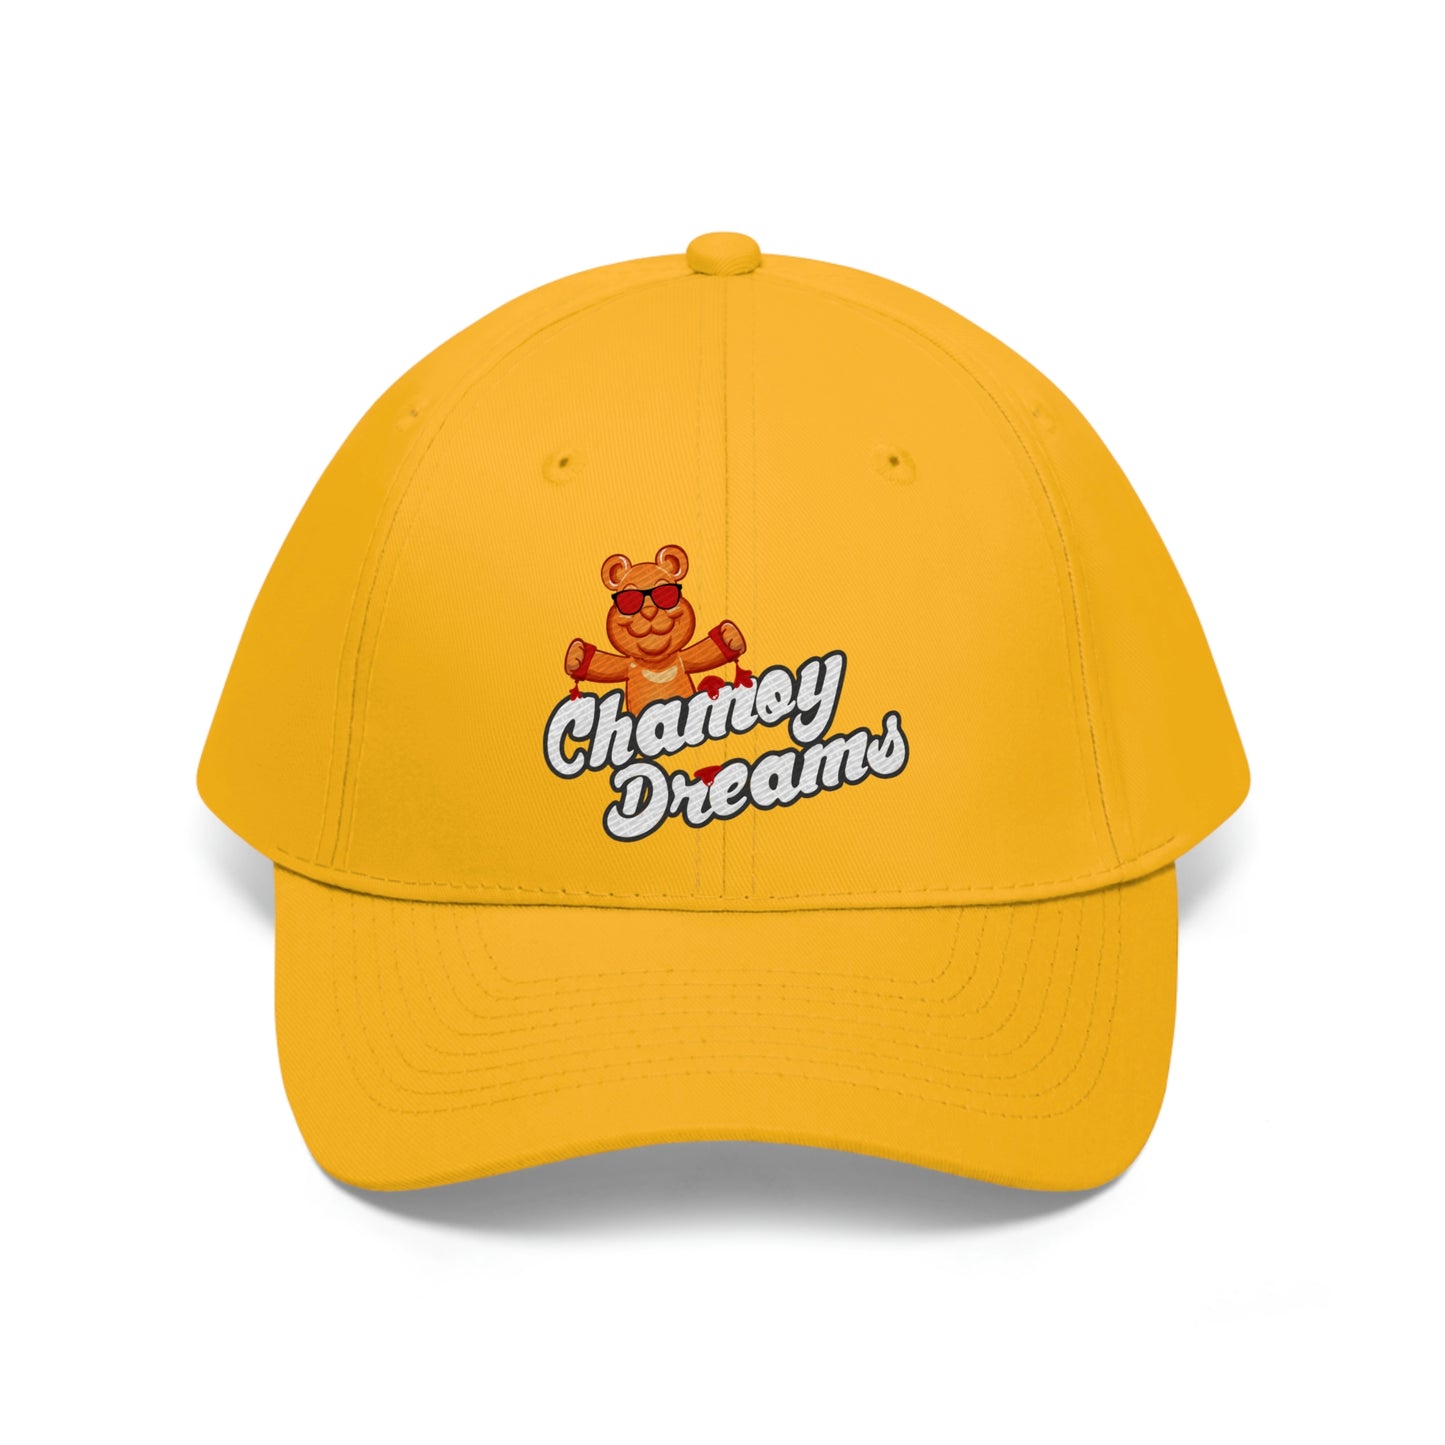 Unisex Twill Hat - New Chamoy Dreams